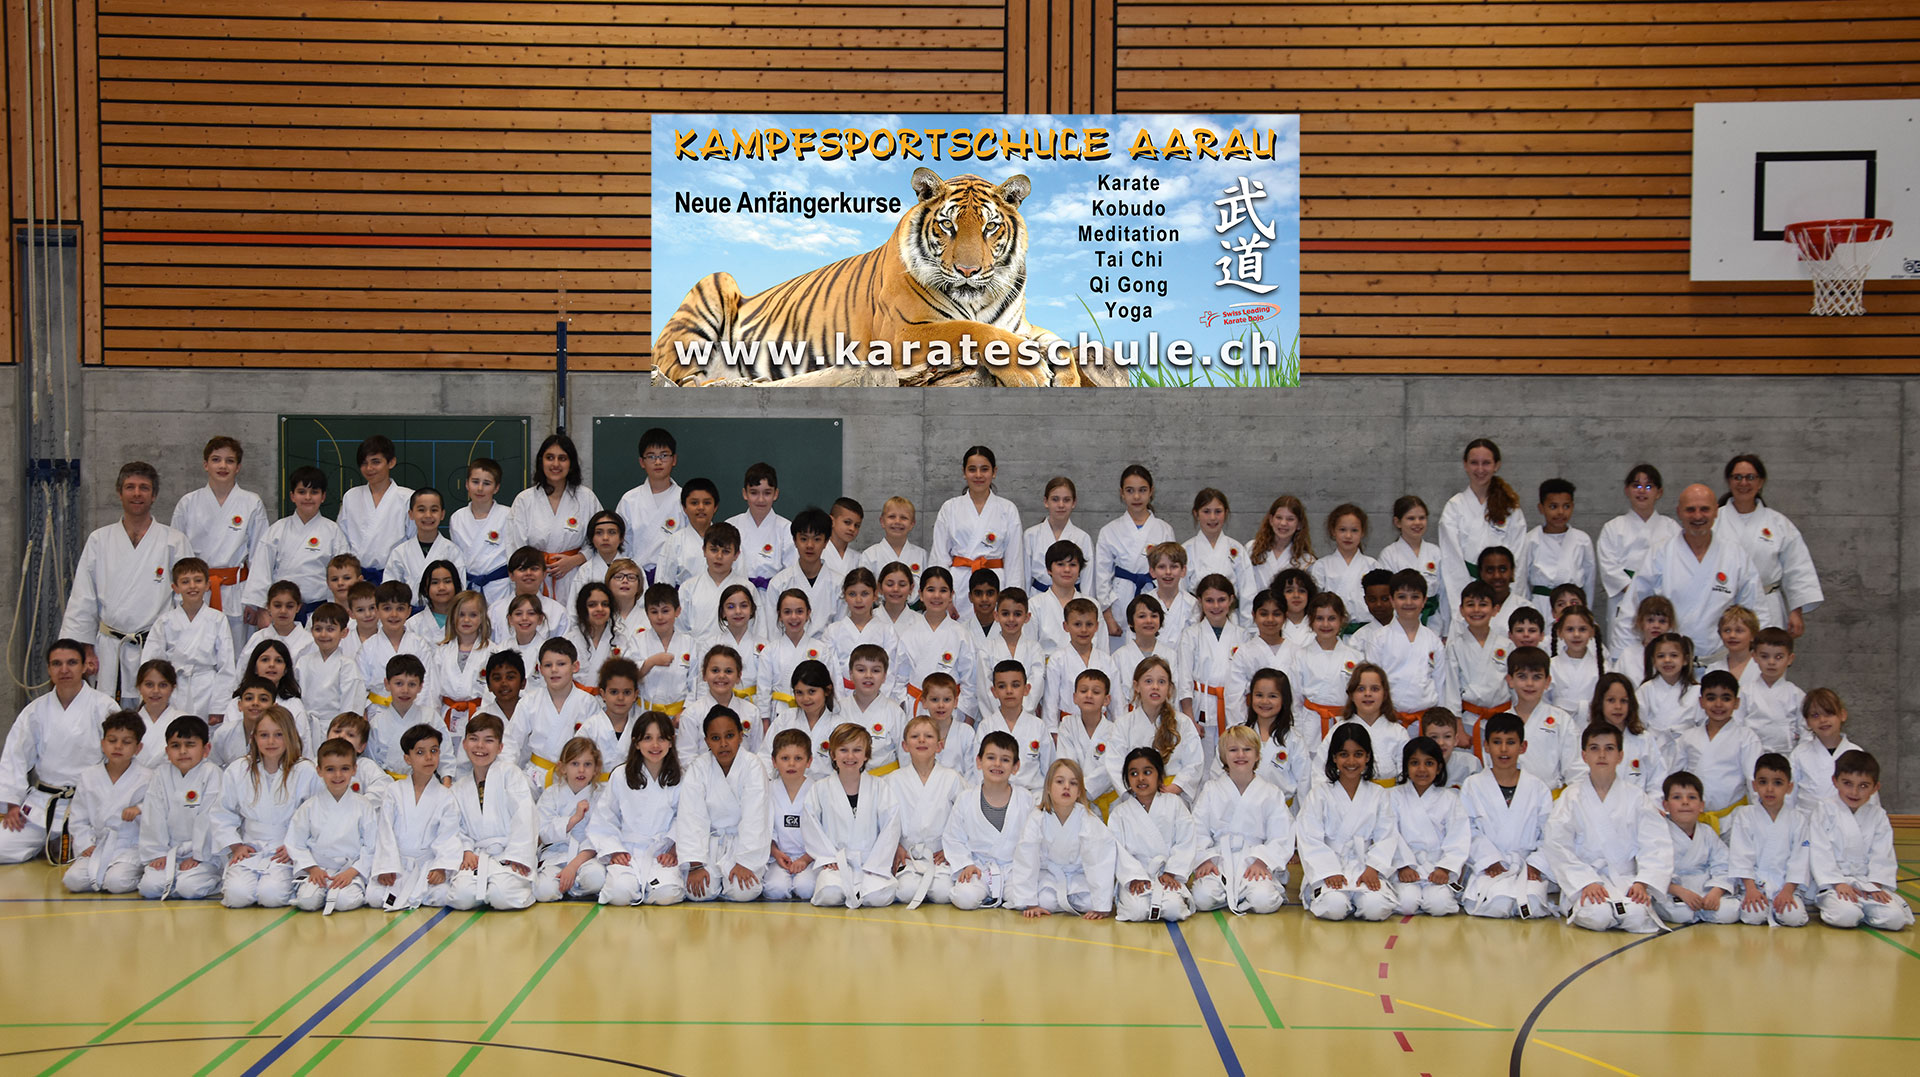 kampfsportschule Aarau - karateschule.ch